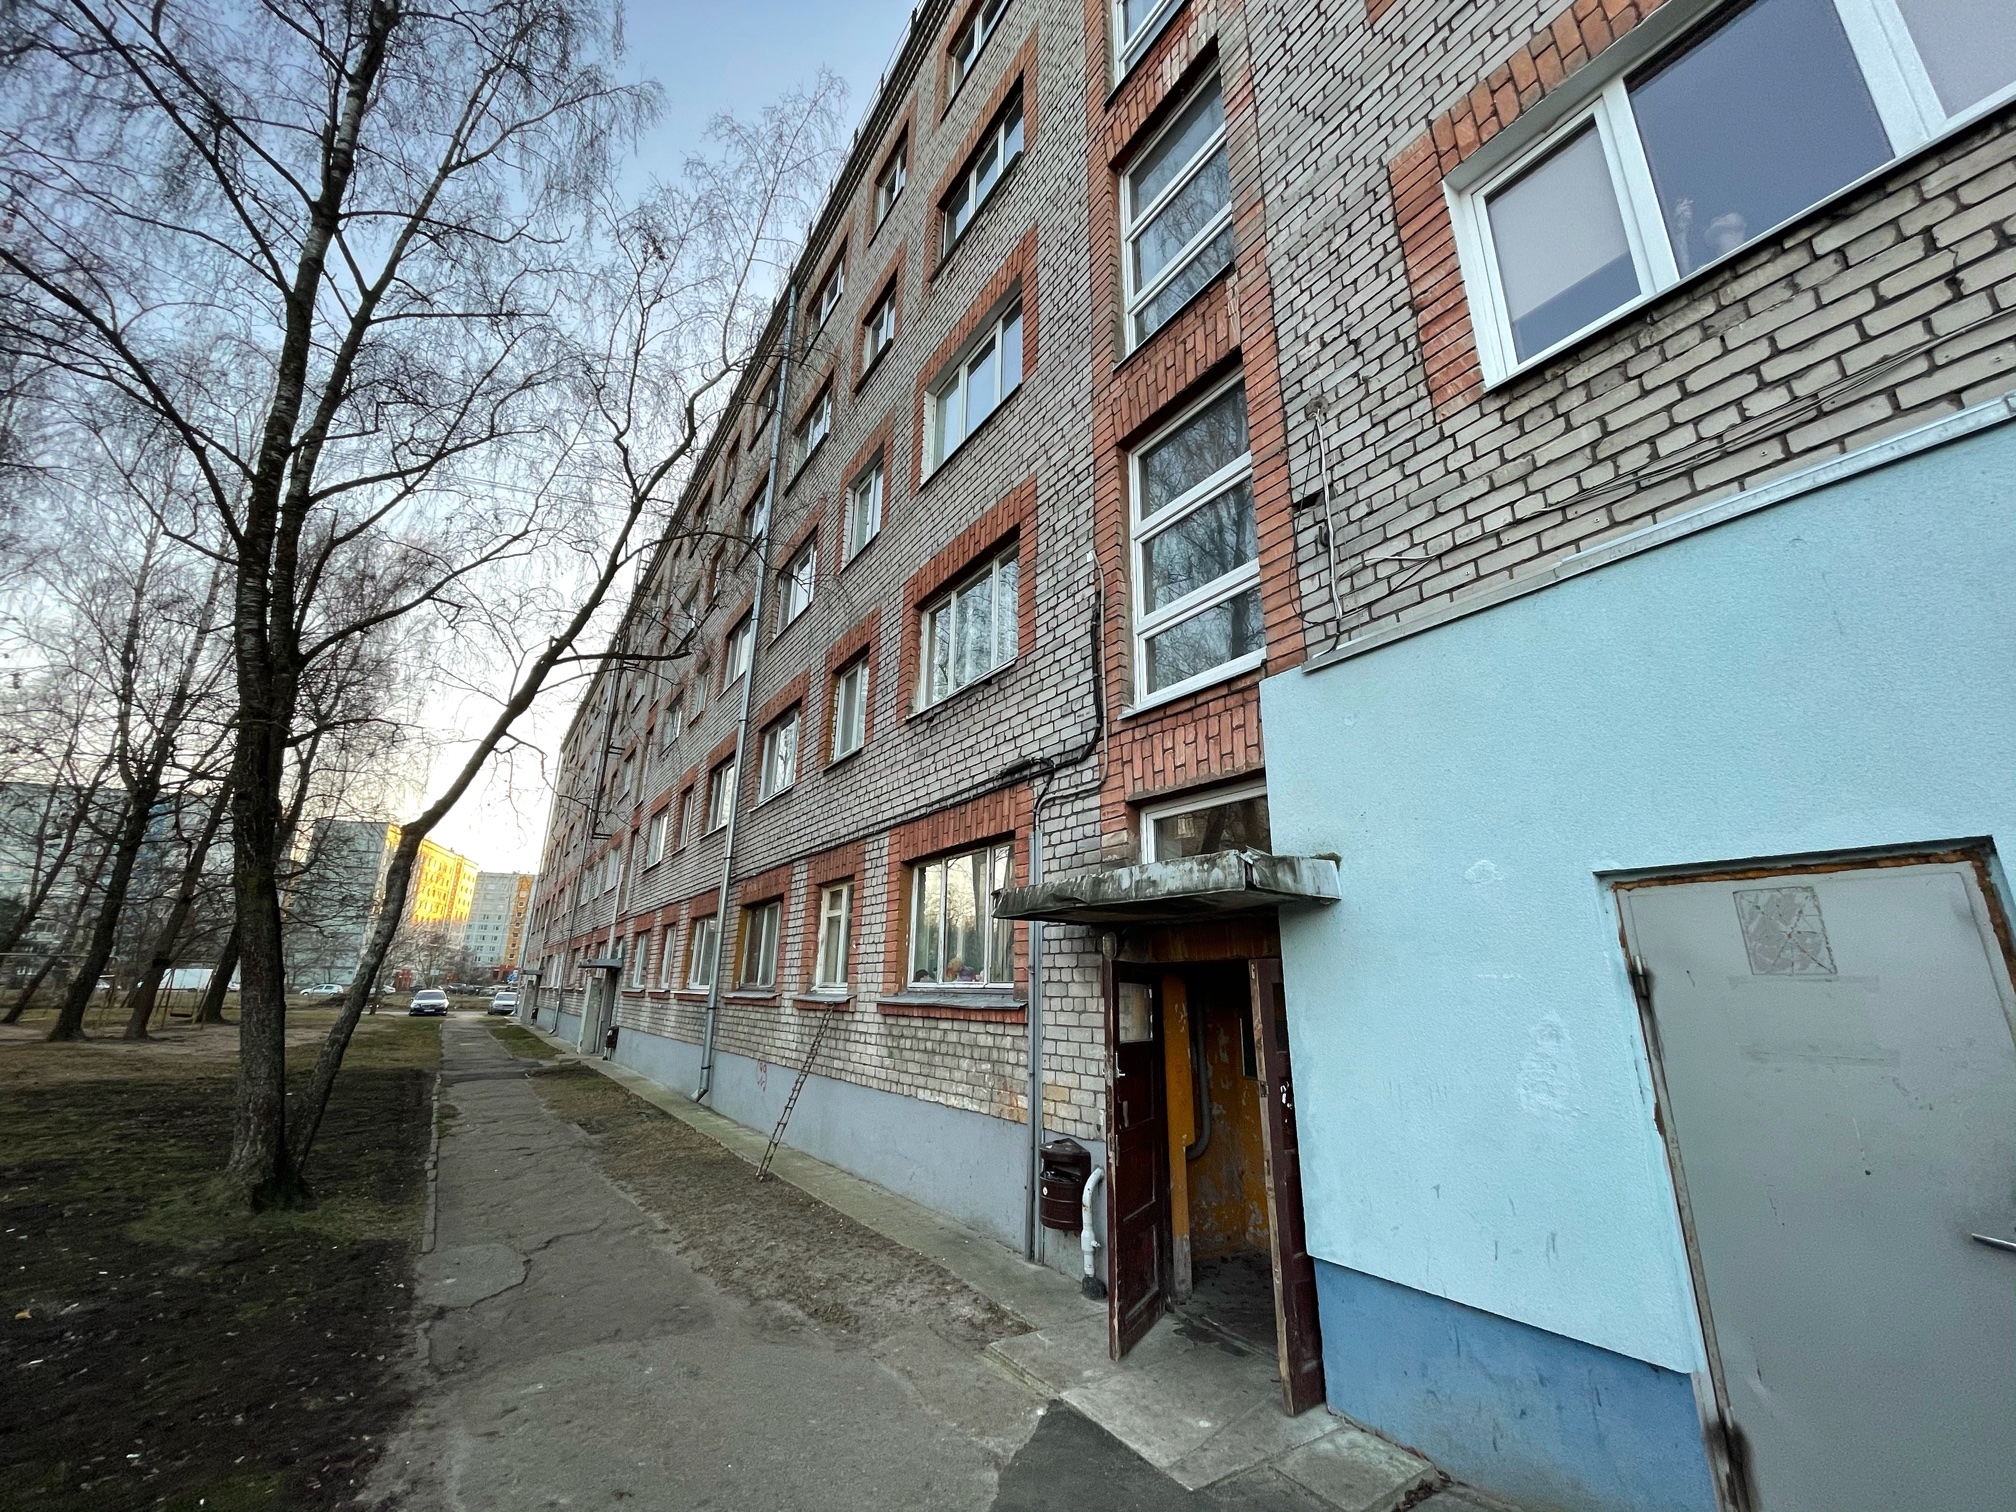 Продают квартиру, улица Zaļenieku 40 - Изображение 1